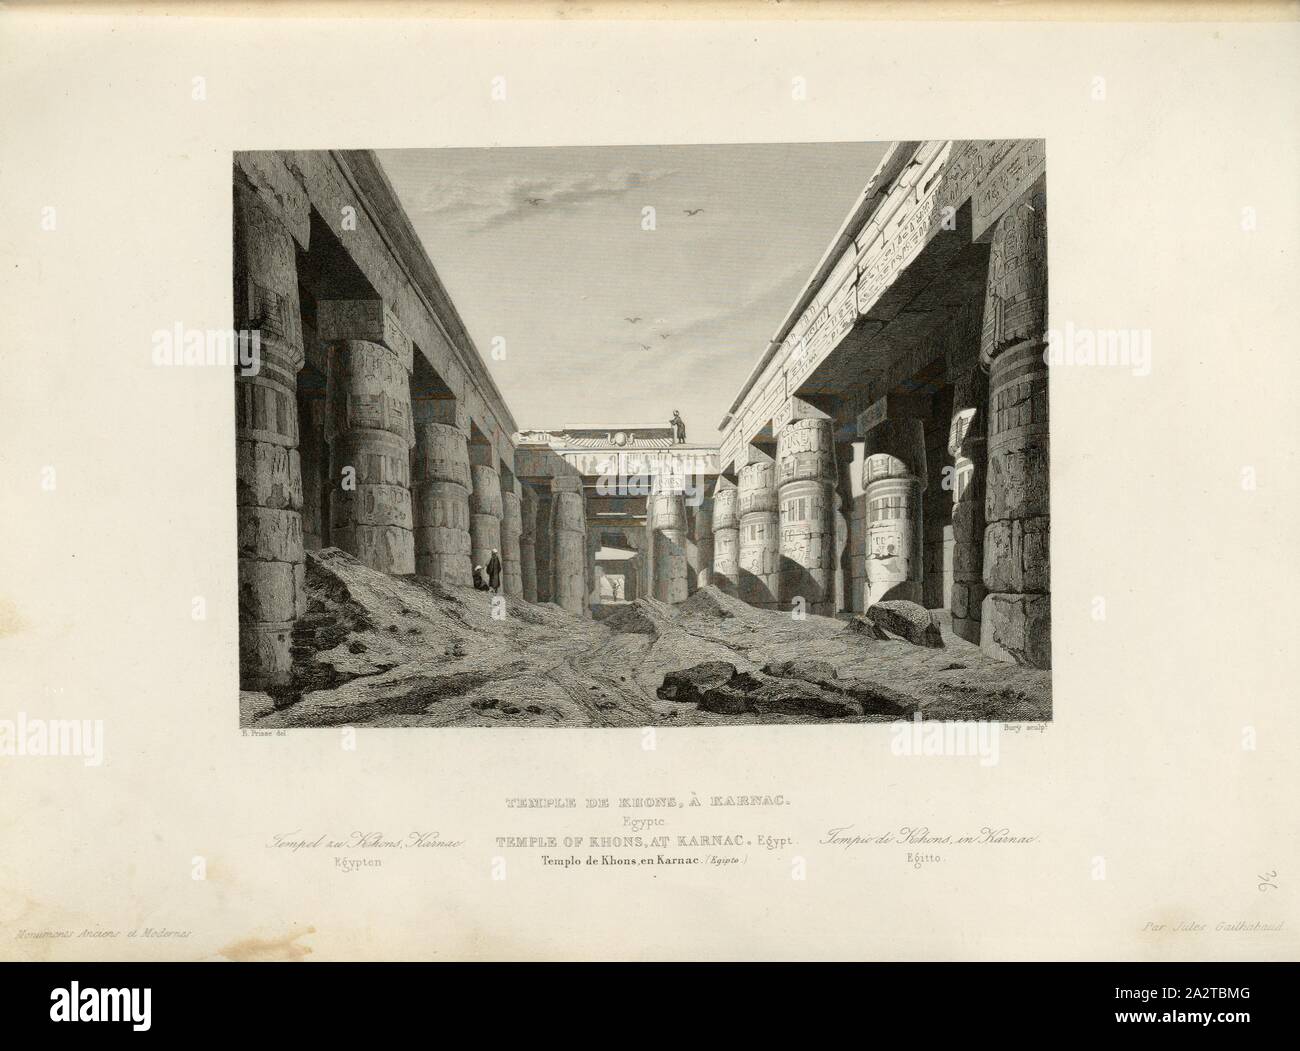 Khons Temple, Karnac 1, Temple of the Chon in Karnak, signed: E. Prisse (del.), Bury (sculp.), Fig. 31, p. 143, Prisse, E (del.), Bury, J. (sculp.), 1853, Jules Gailhabaud: Monuments anciens et modernes. Bd. 1. Paris: Librairie de Firmin Didot frères, 1853 Stock Photo